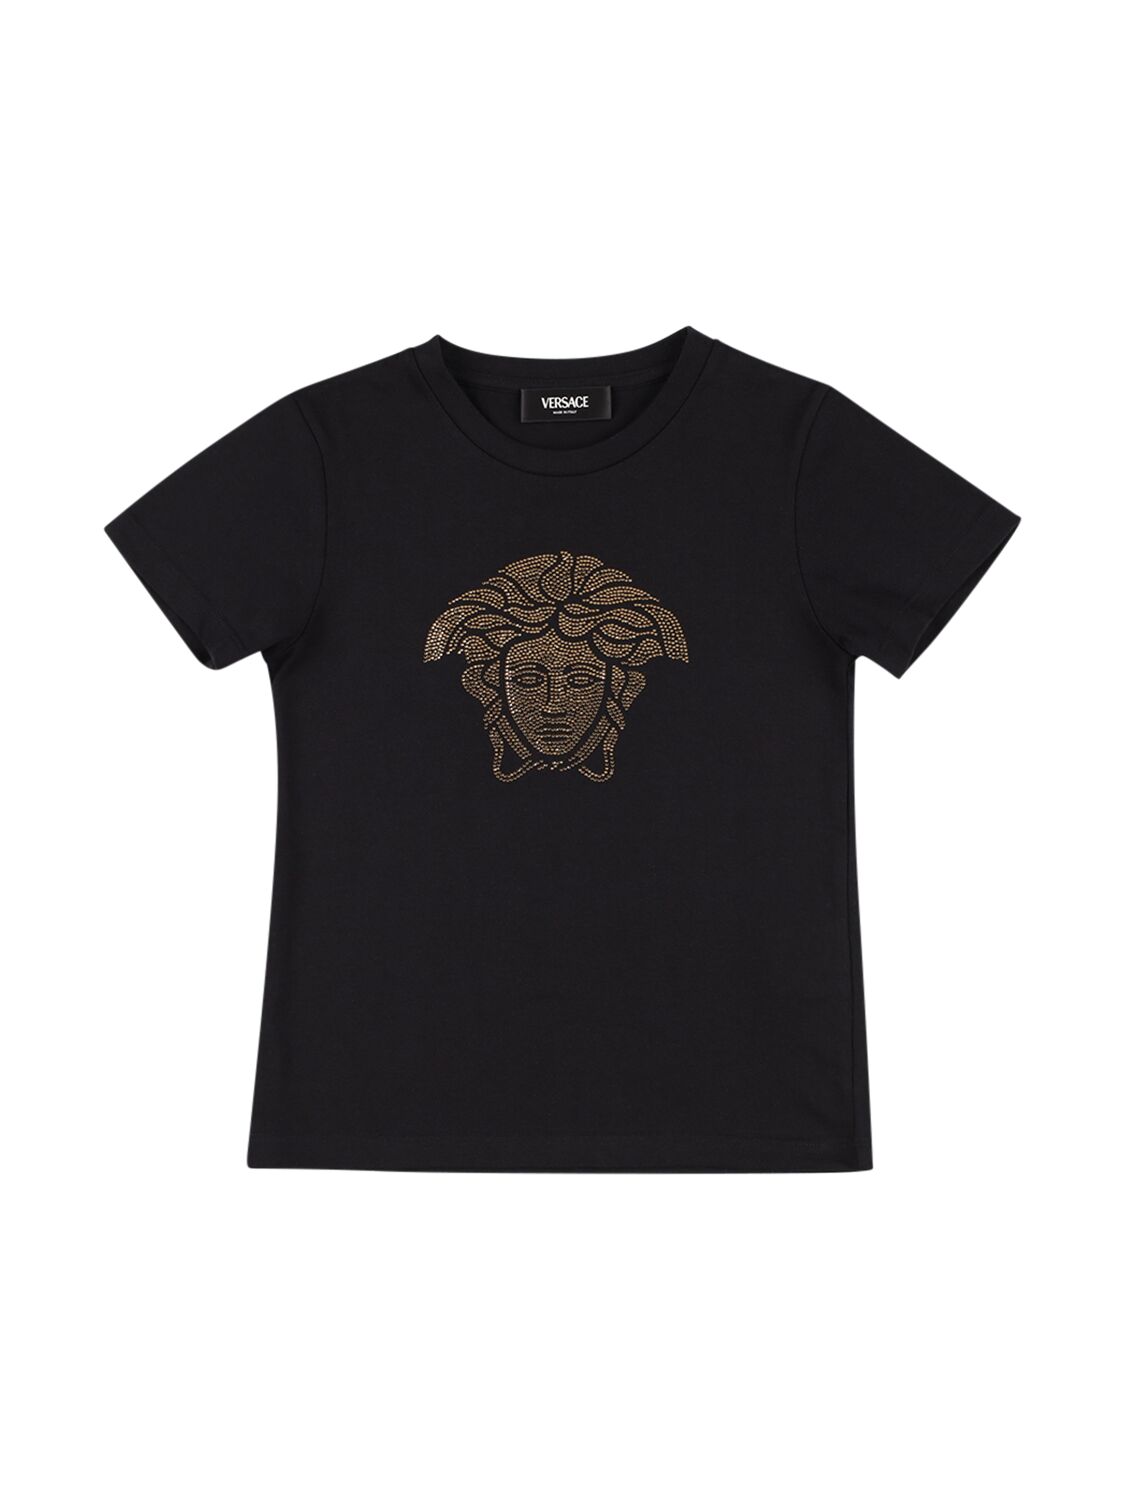 Versace Kids' T-shirt Aus Baumwolljersey Mit Kristalllogo In Schwarz,gold